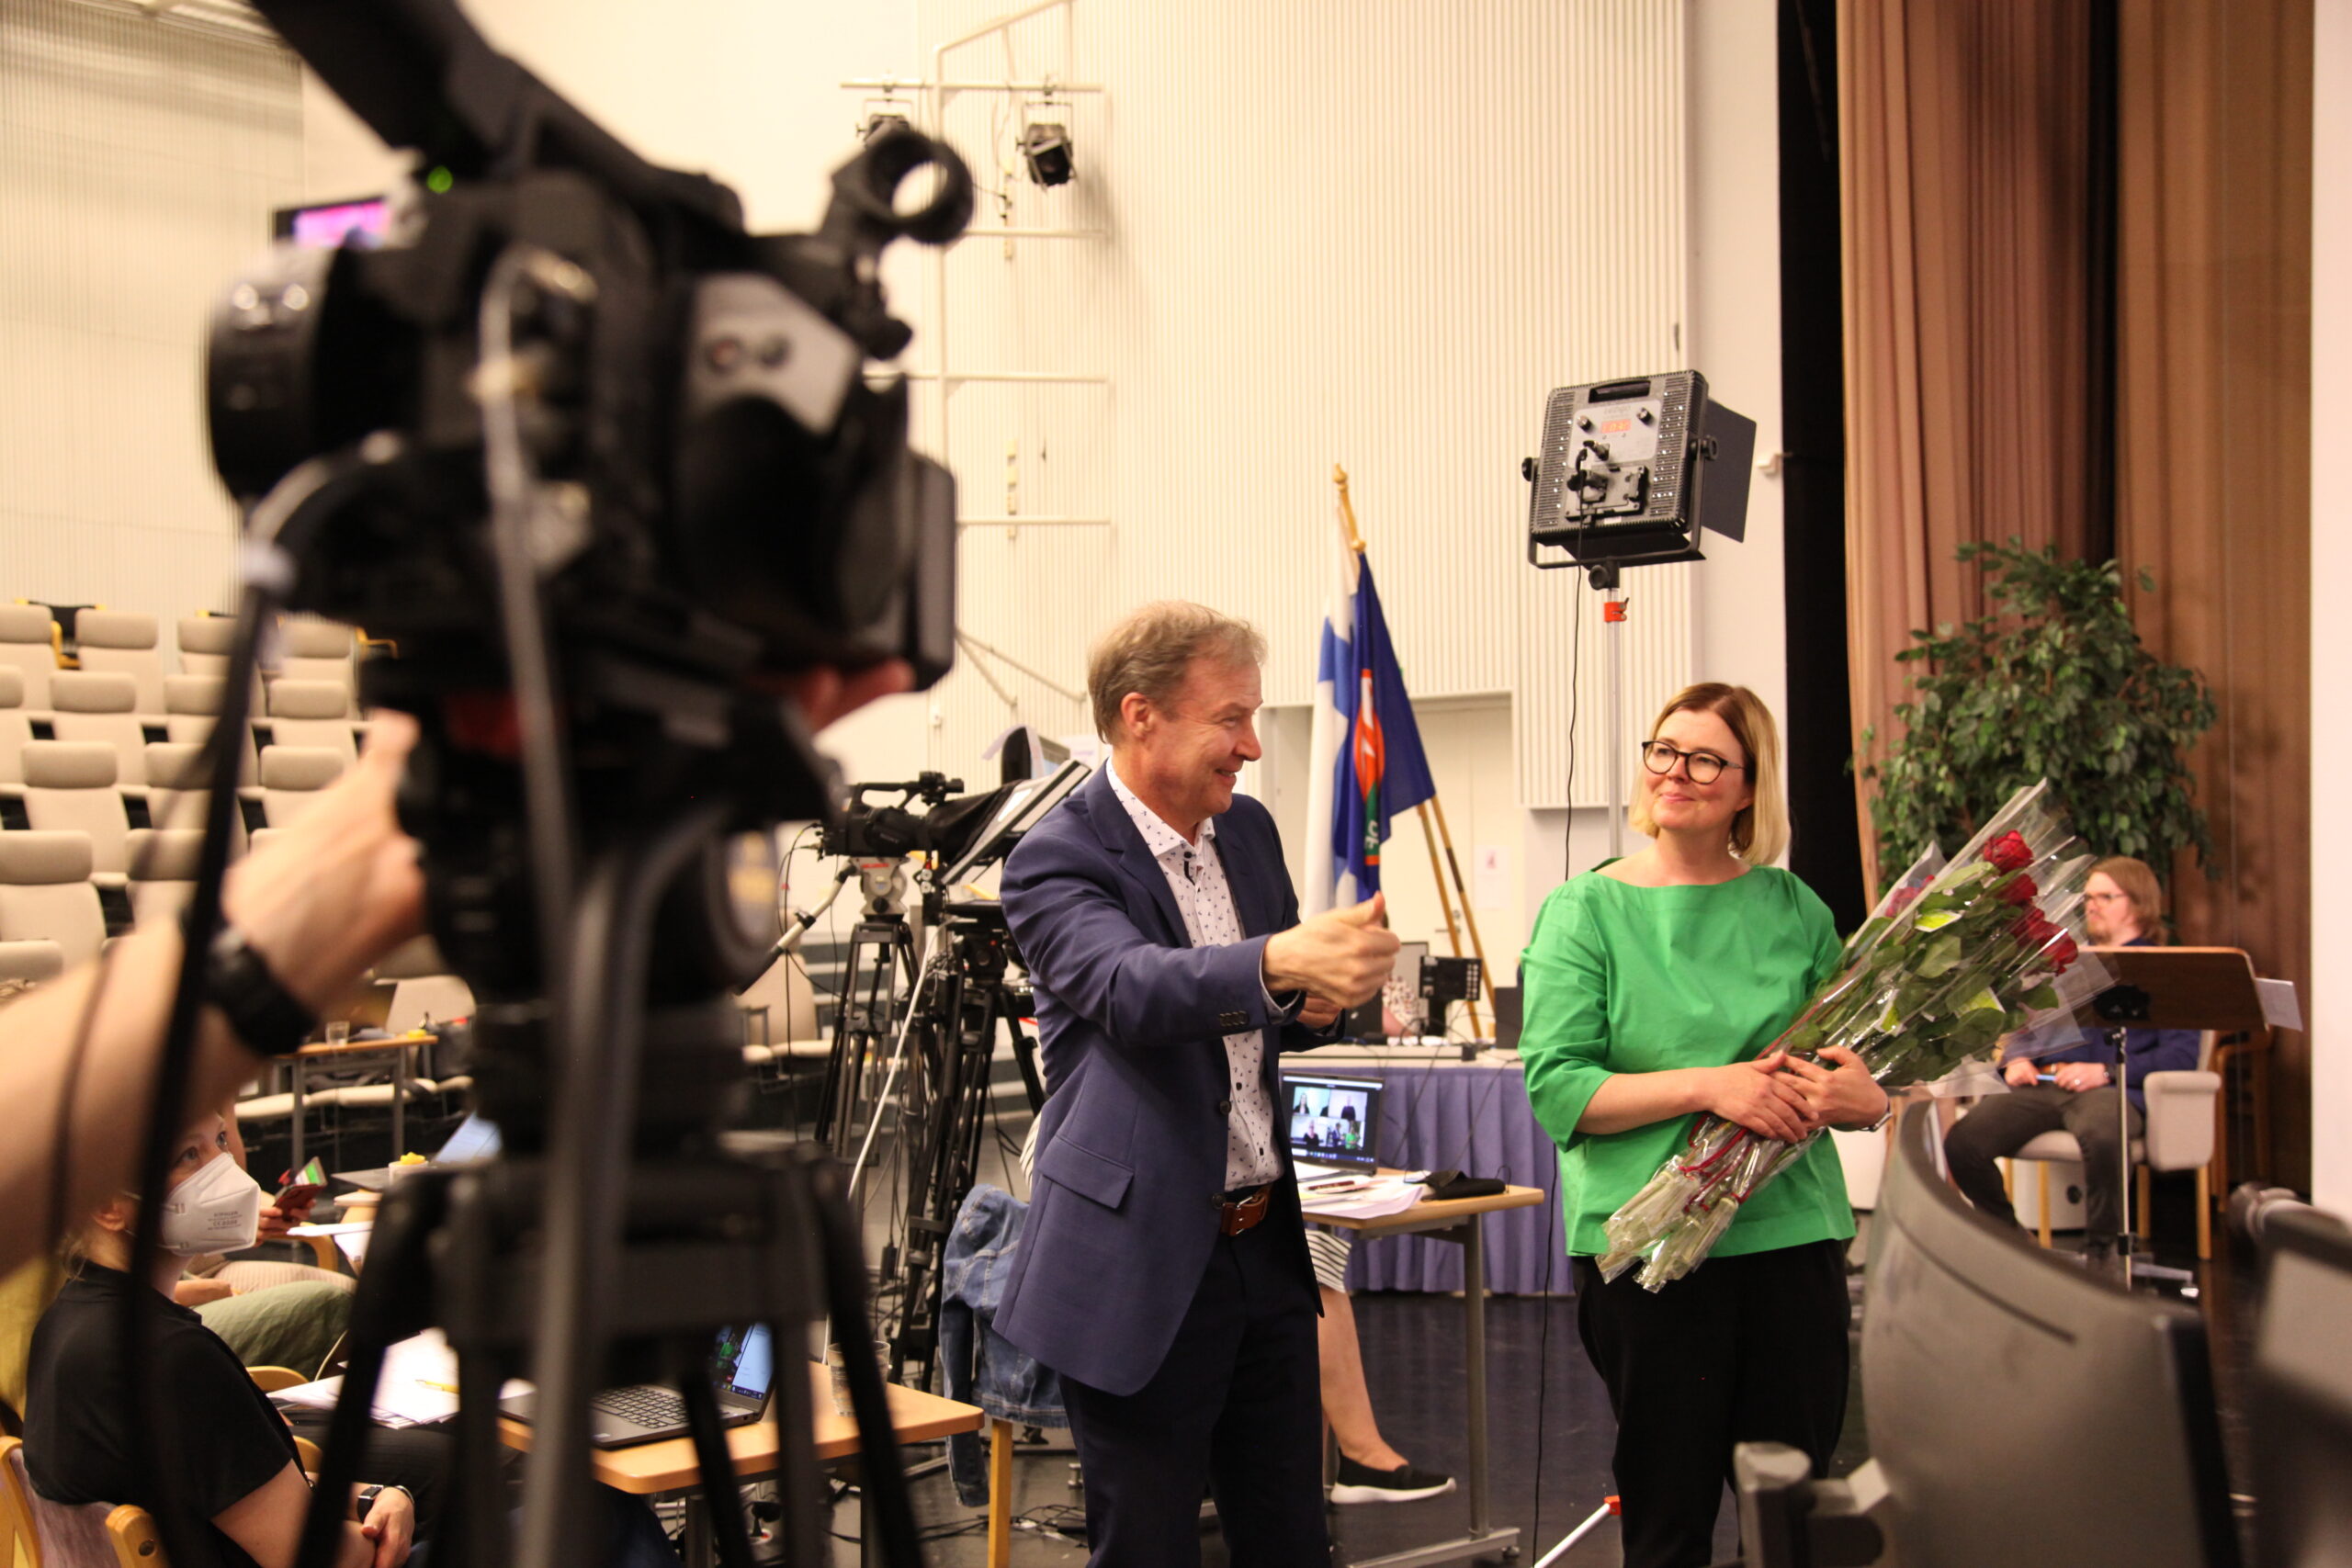 Markku Jokinen viittoo kiitoksia ja Kaisa Alanne pitää kädessää ruusunippua. Kuvan vasemmassa reunassa on kamera.